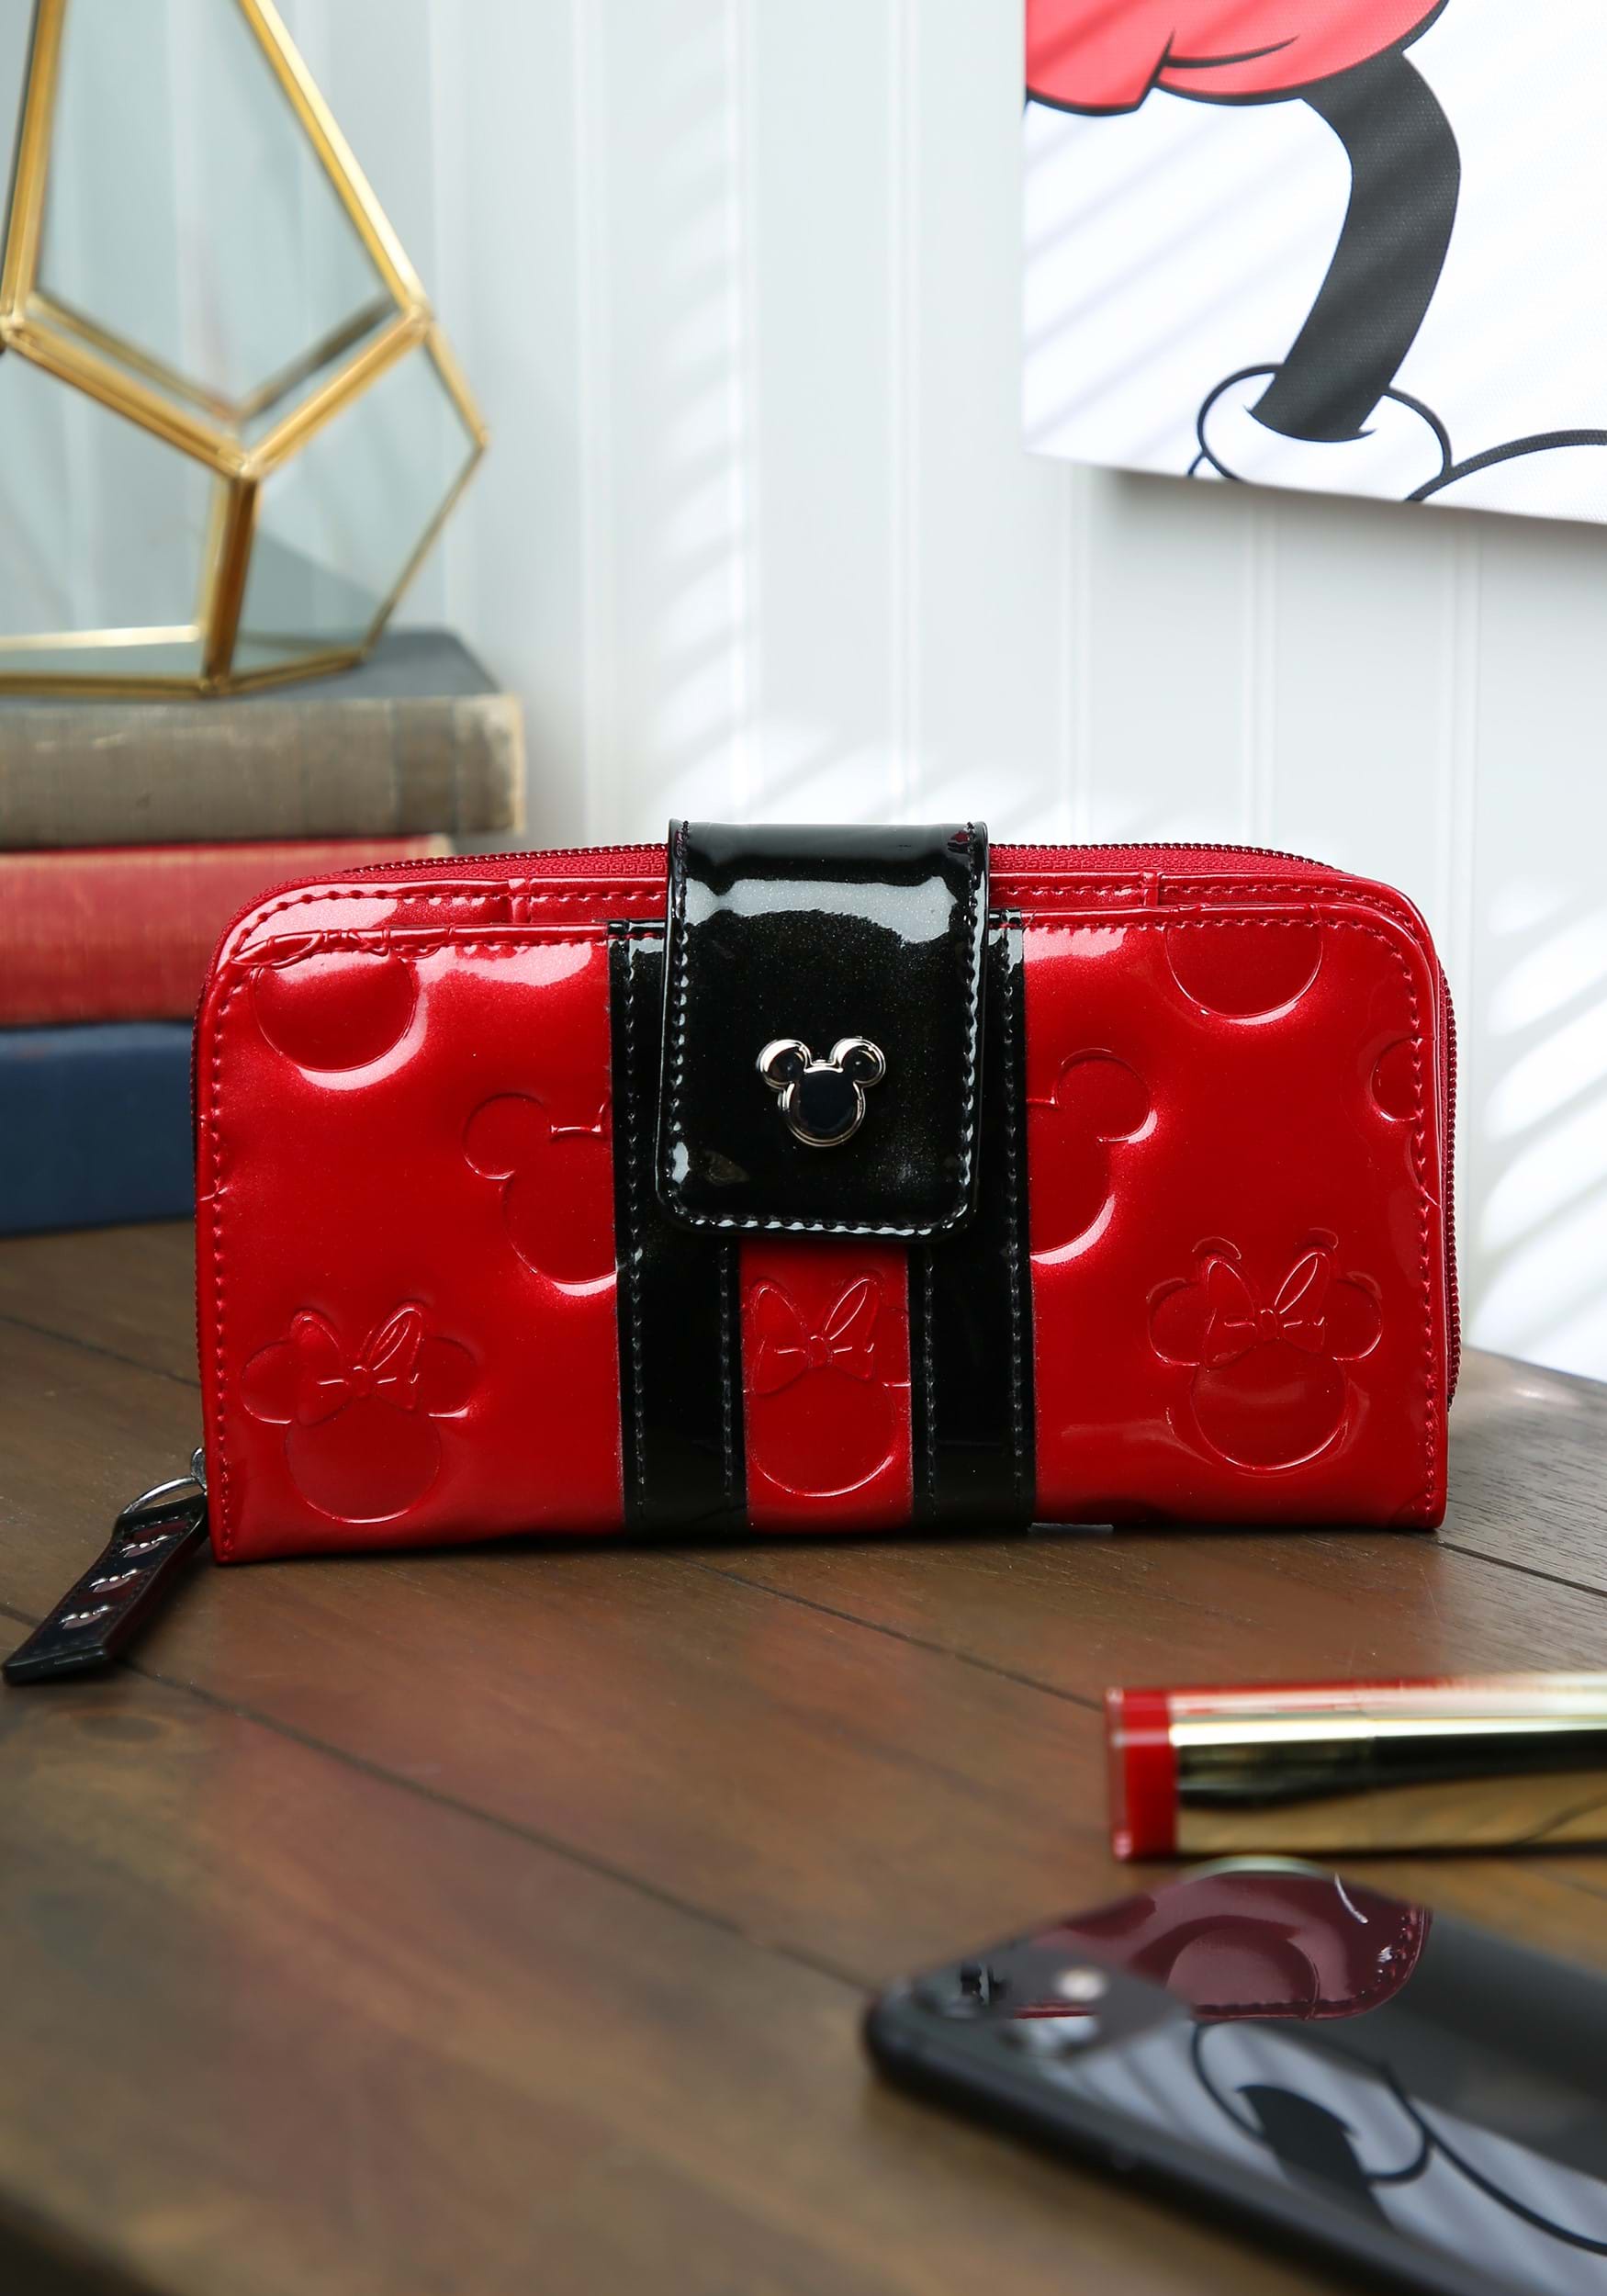 Hot Disney Fashion Mickey Minnie For Girl Handbag PU Leather